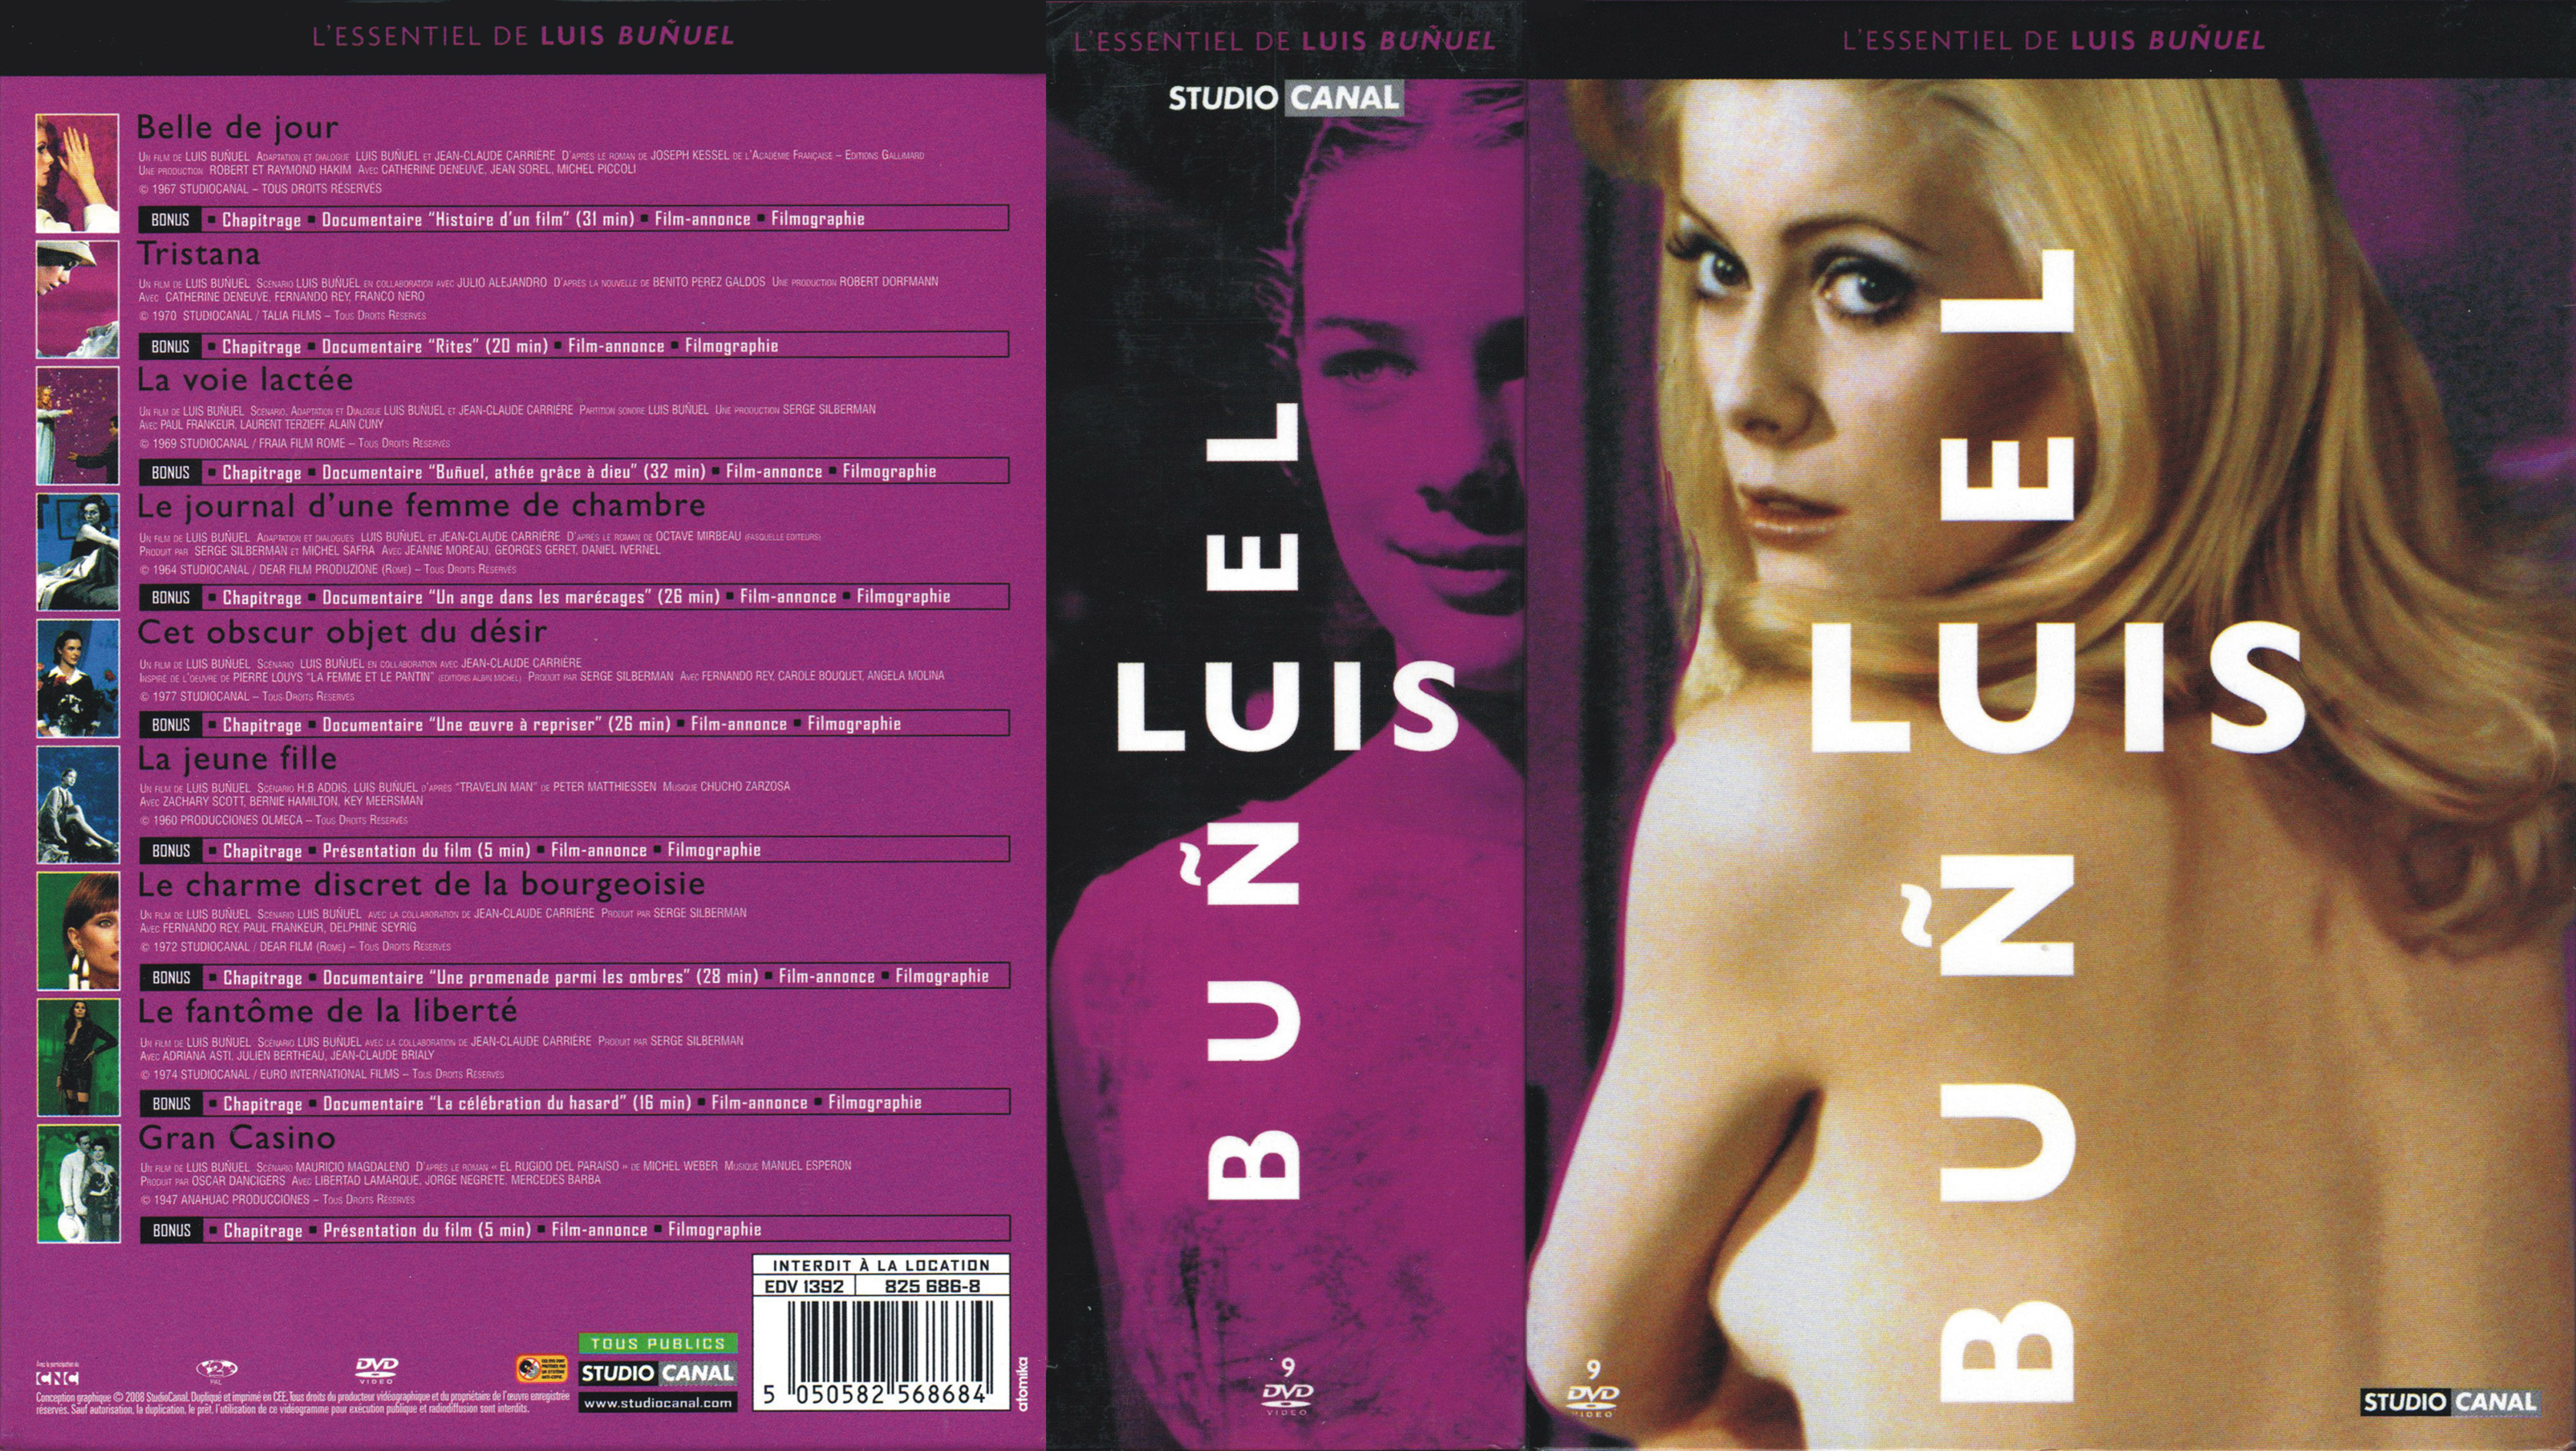 Jaquette DVD Coffret Luis Bunuel